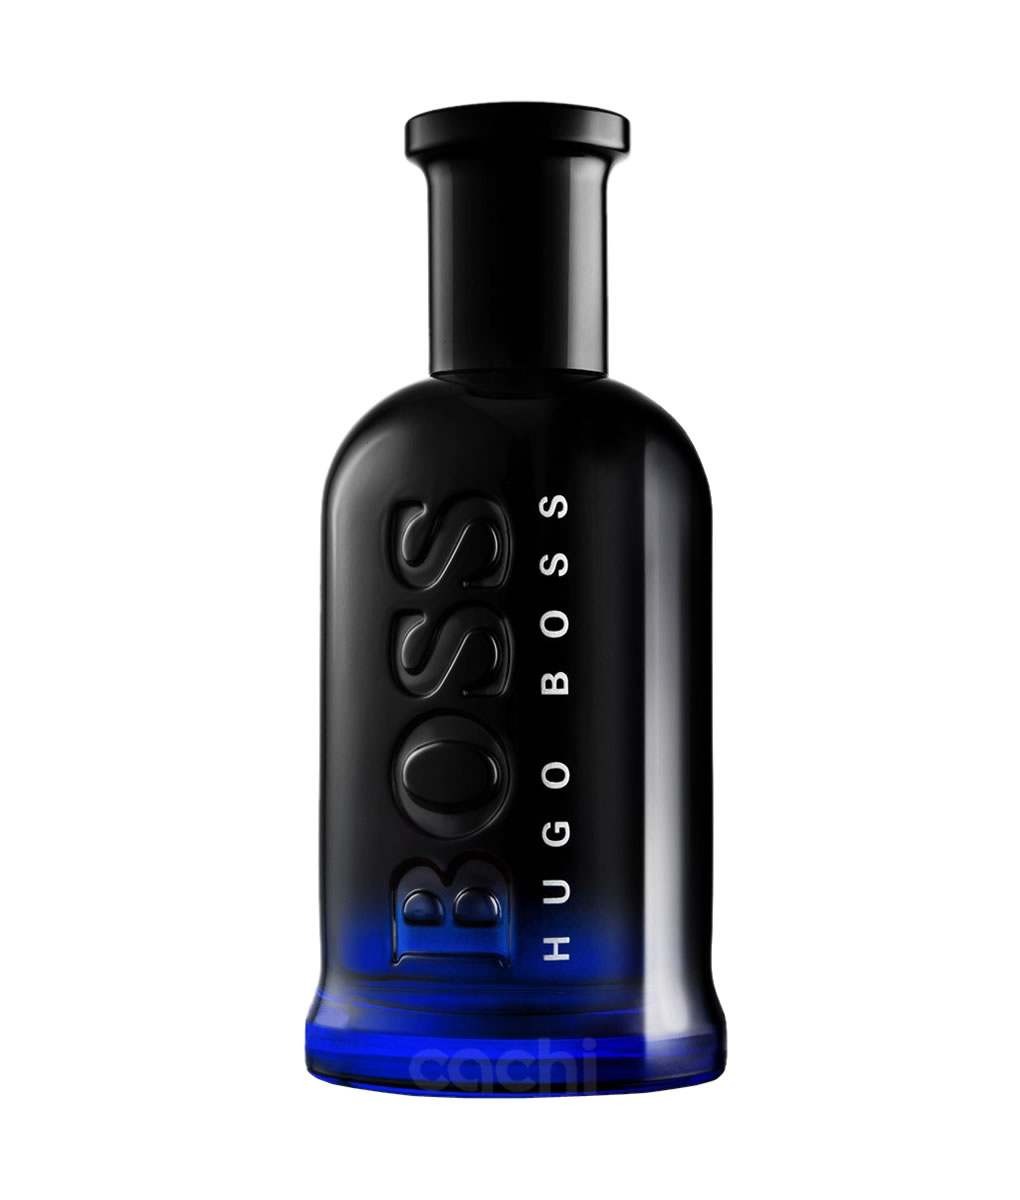 Ml hugo. Boss "Hugo Boss Bottled Night" 100 ml. Hugo Boss Bottled Night 100 ml. Boss Bottled Hugo Boss 100 мл. Hugo Boss - Bottled Night 100мл.